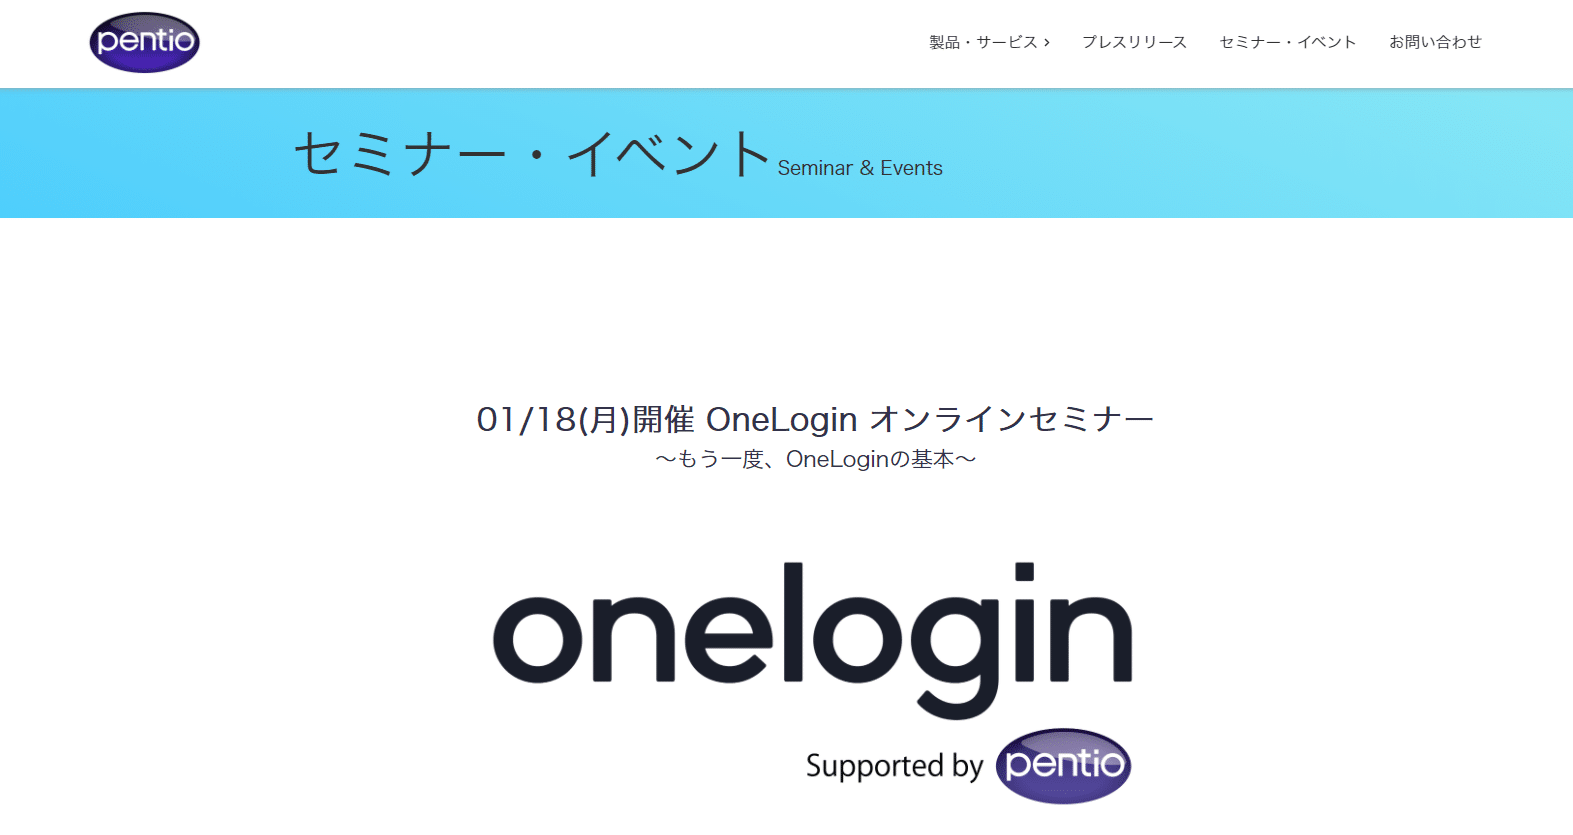 【徹底解説】IDaaS OneLogin オンラインセミナー もう一度、OneLoginの基本